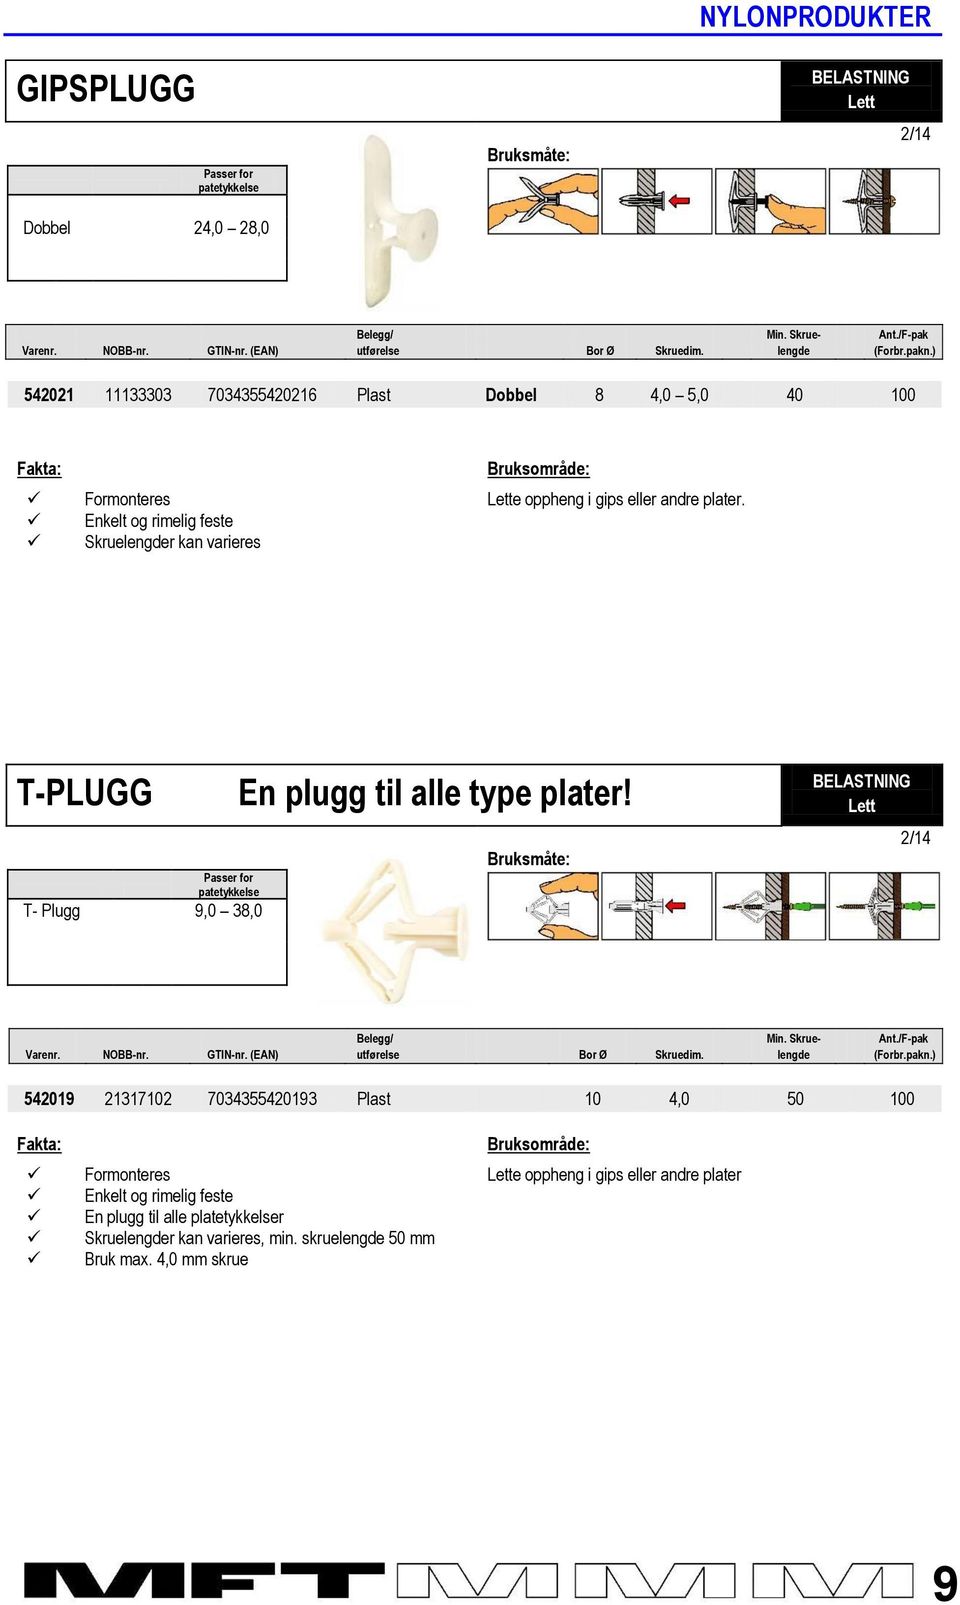 T-PLUGG Passer for patetykkelse T- Plugg 9,0 38,0 En plugg til alle type plater! Lett Belegg/ Min. Skrue- Ant./F-pak Varenr. NOBB-nr. GTIN-nr. (EAN) utførelse Bor Ø Skruedim. lengde (Forbr.pakn.